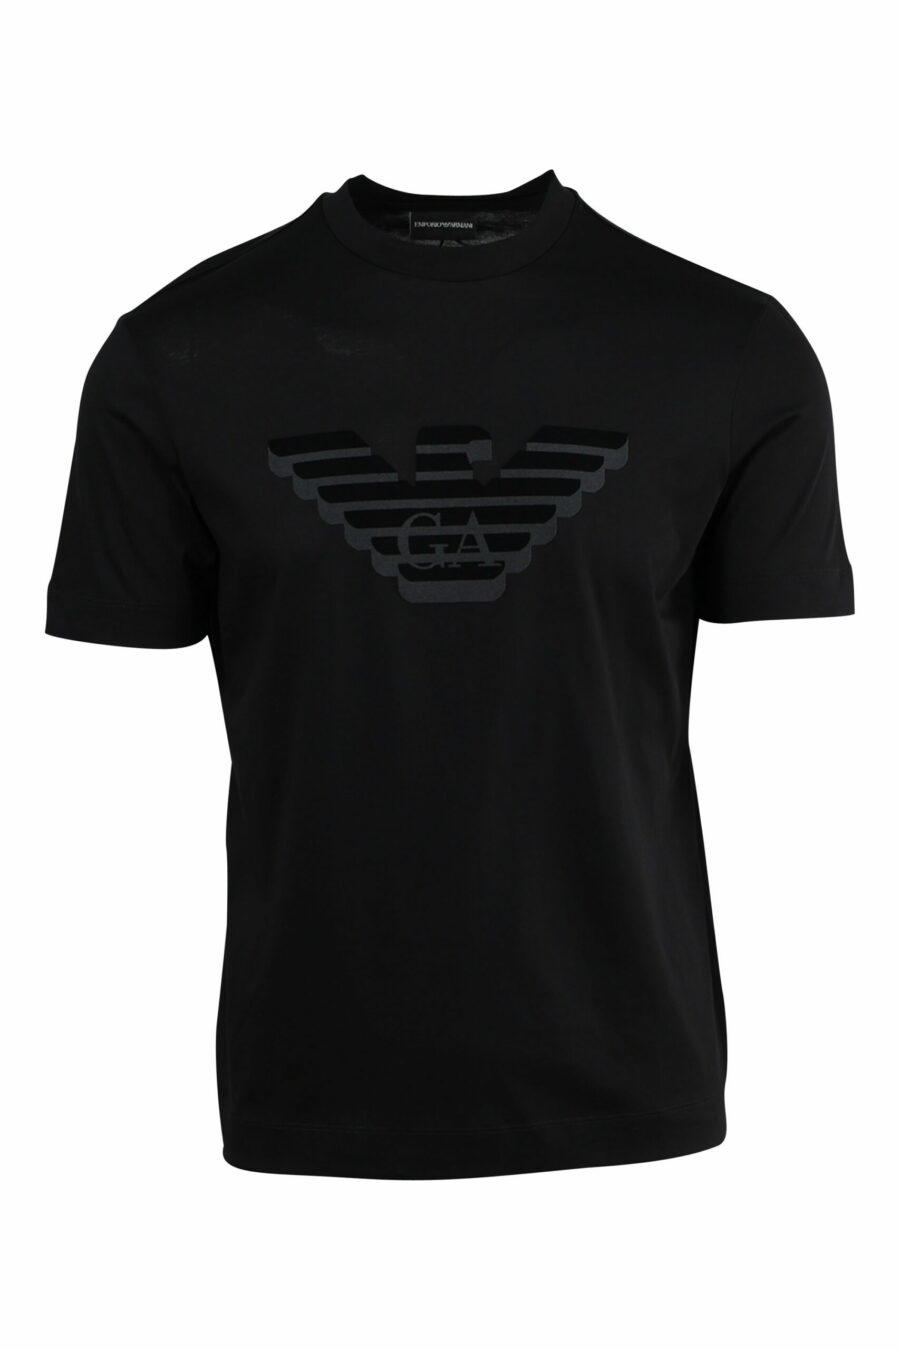 Camiseta negra con maxilogo águila en relieve - 8057970433729 scaled